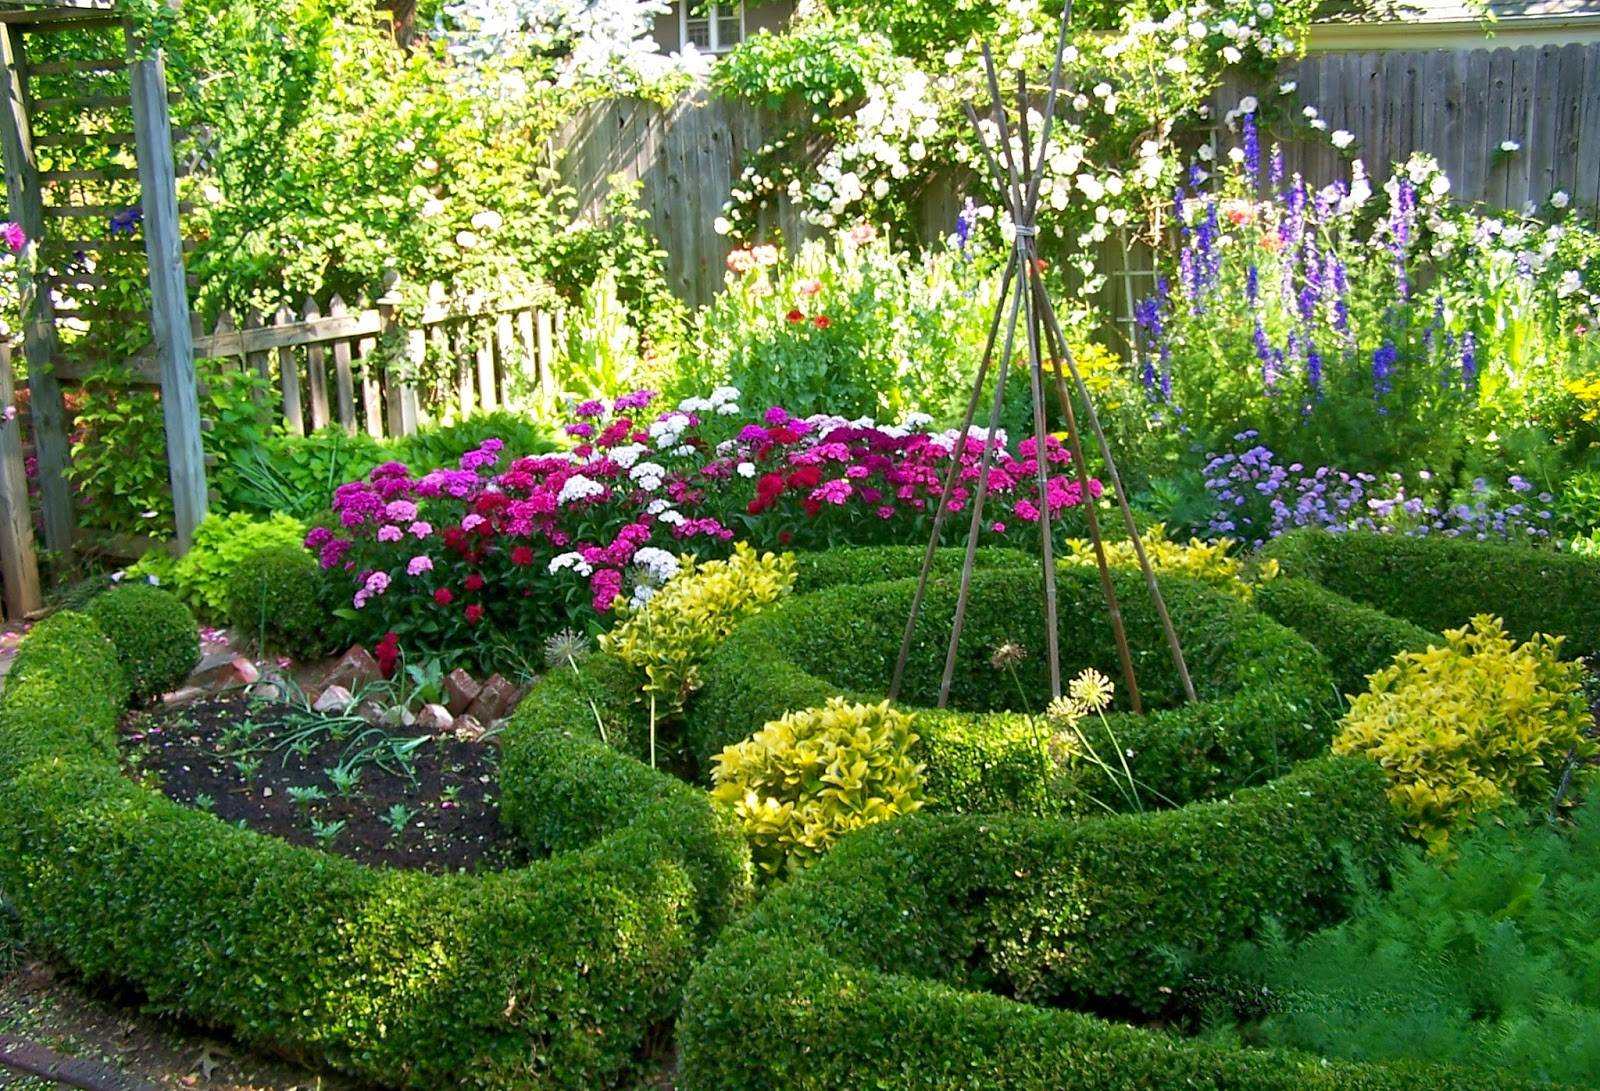 Incredibly Simple Diy Herbs Garden Ideas